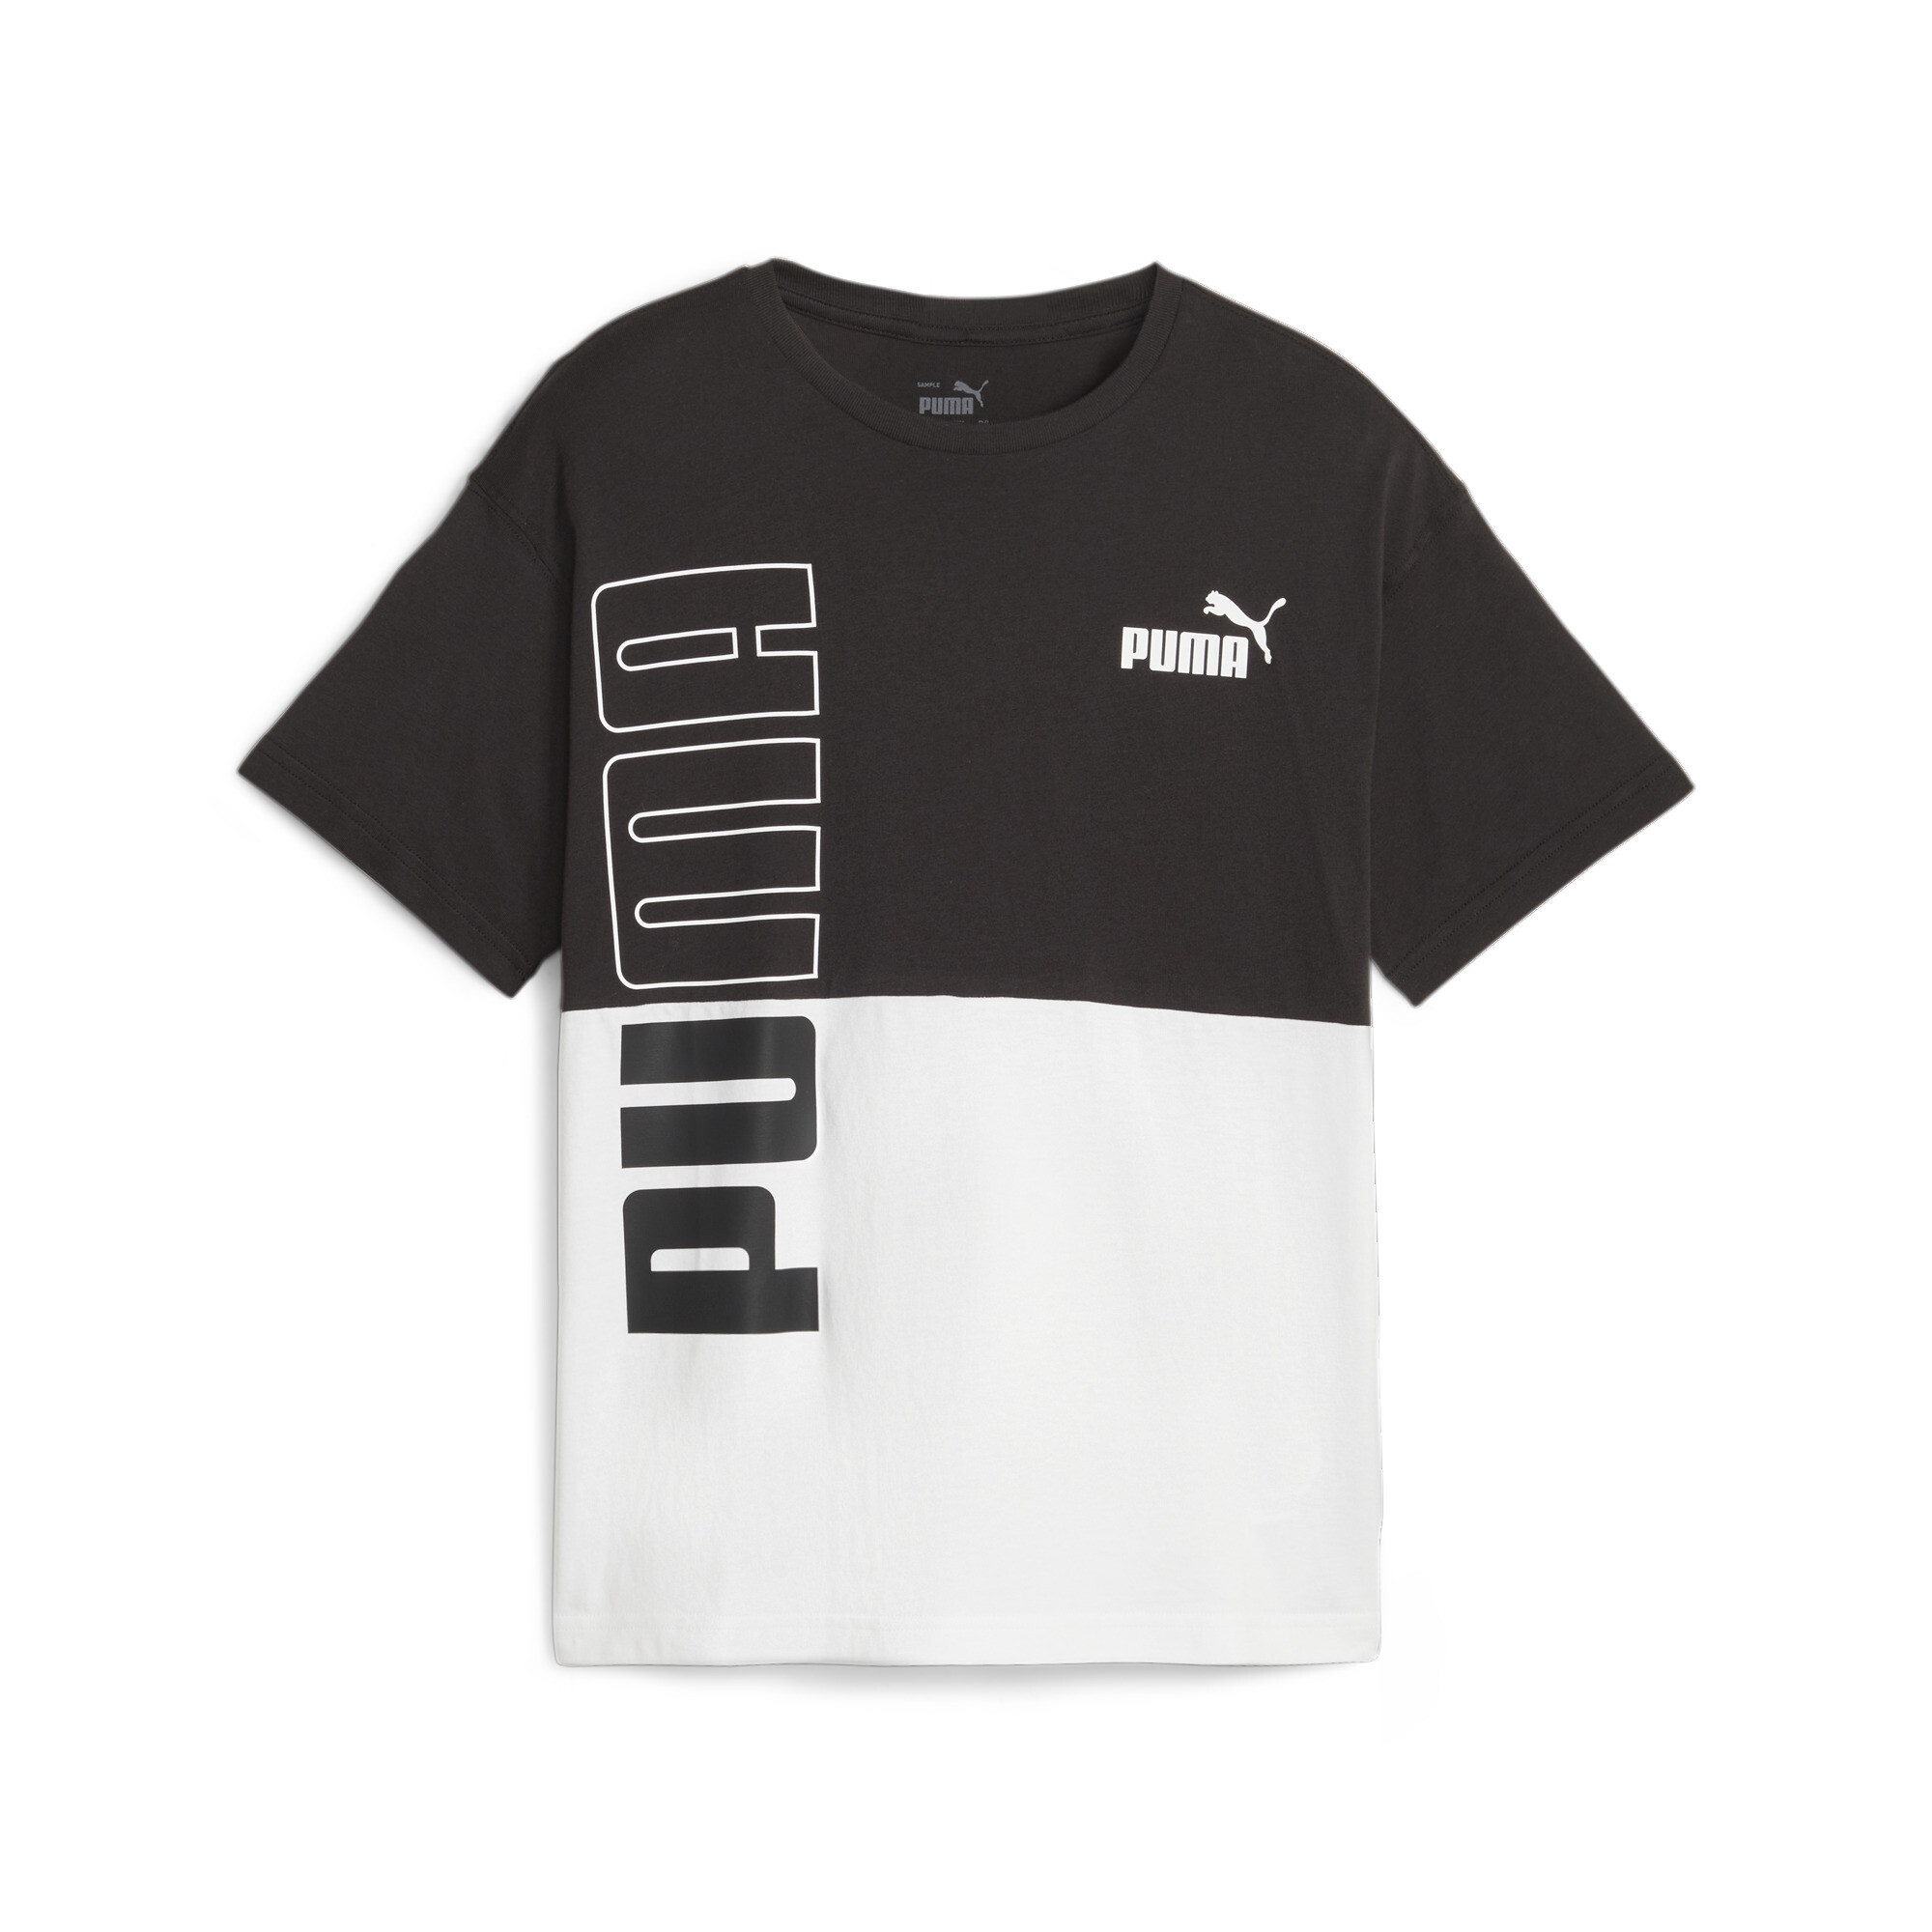  プーマ キッズ ボーイズ PUMA POWER カラーブロック Tシャツ 120-160cm メンズ PUMA Black ｜PUMA.com